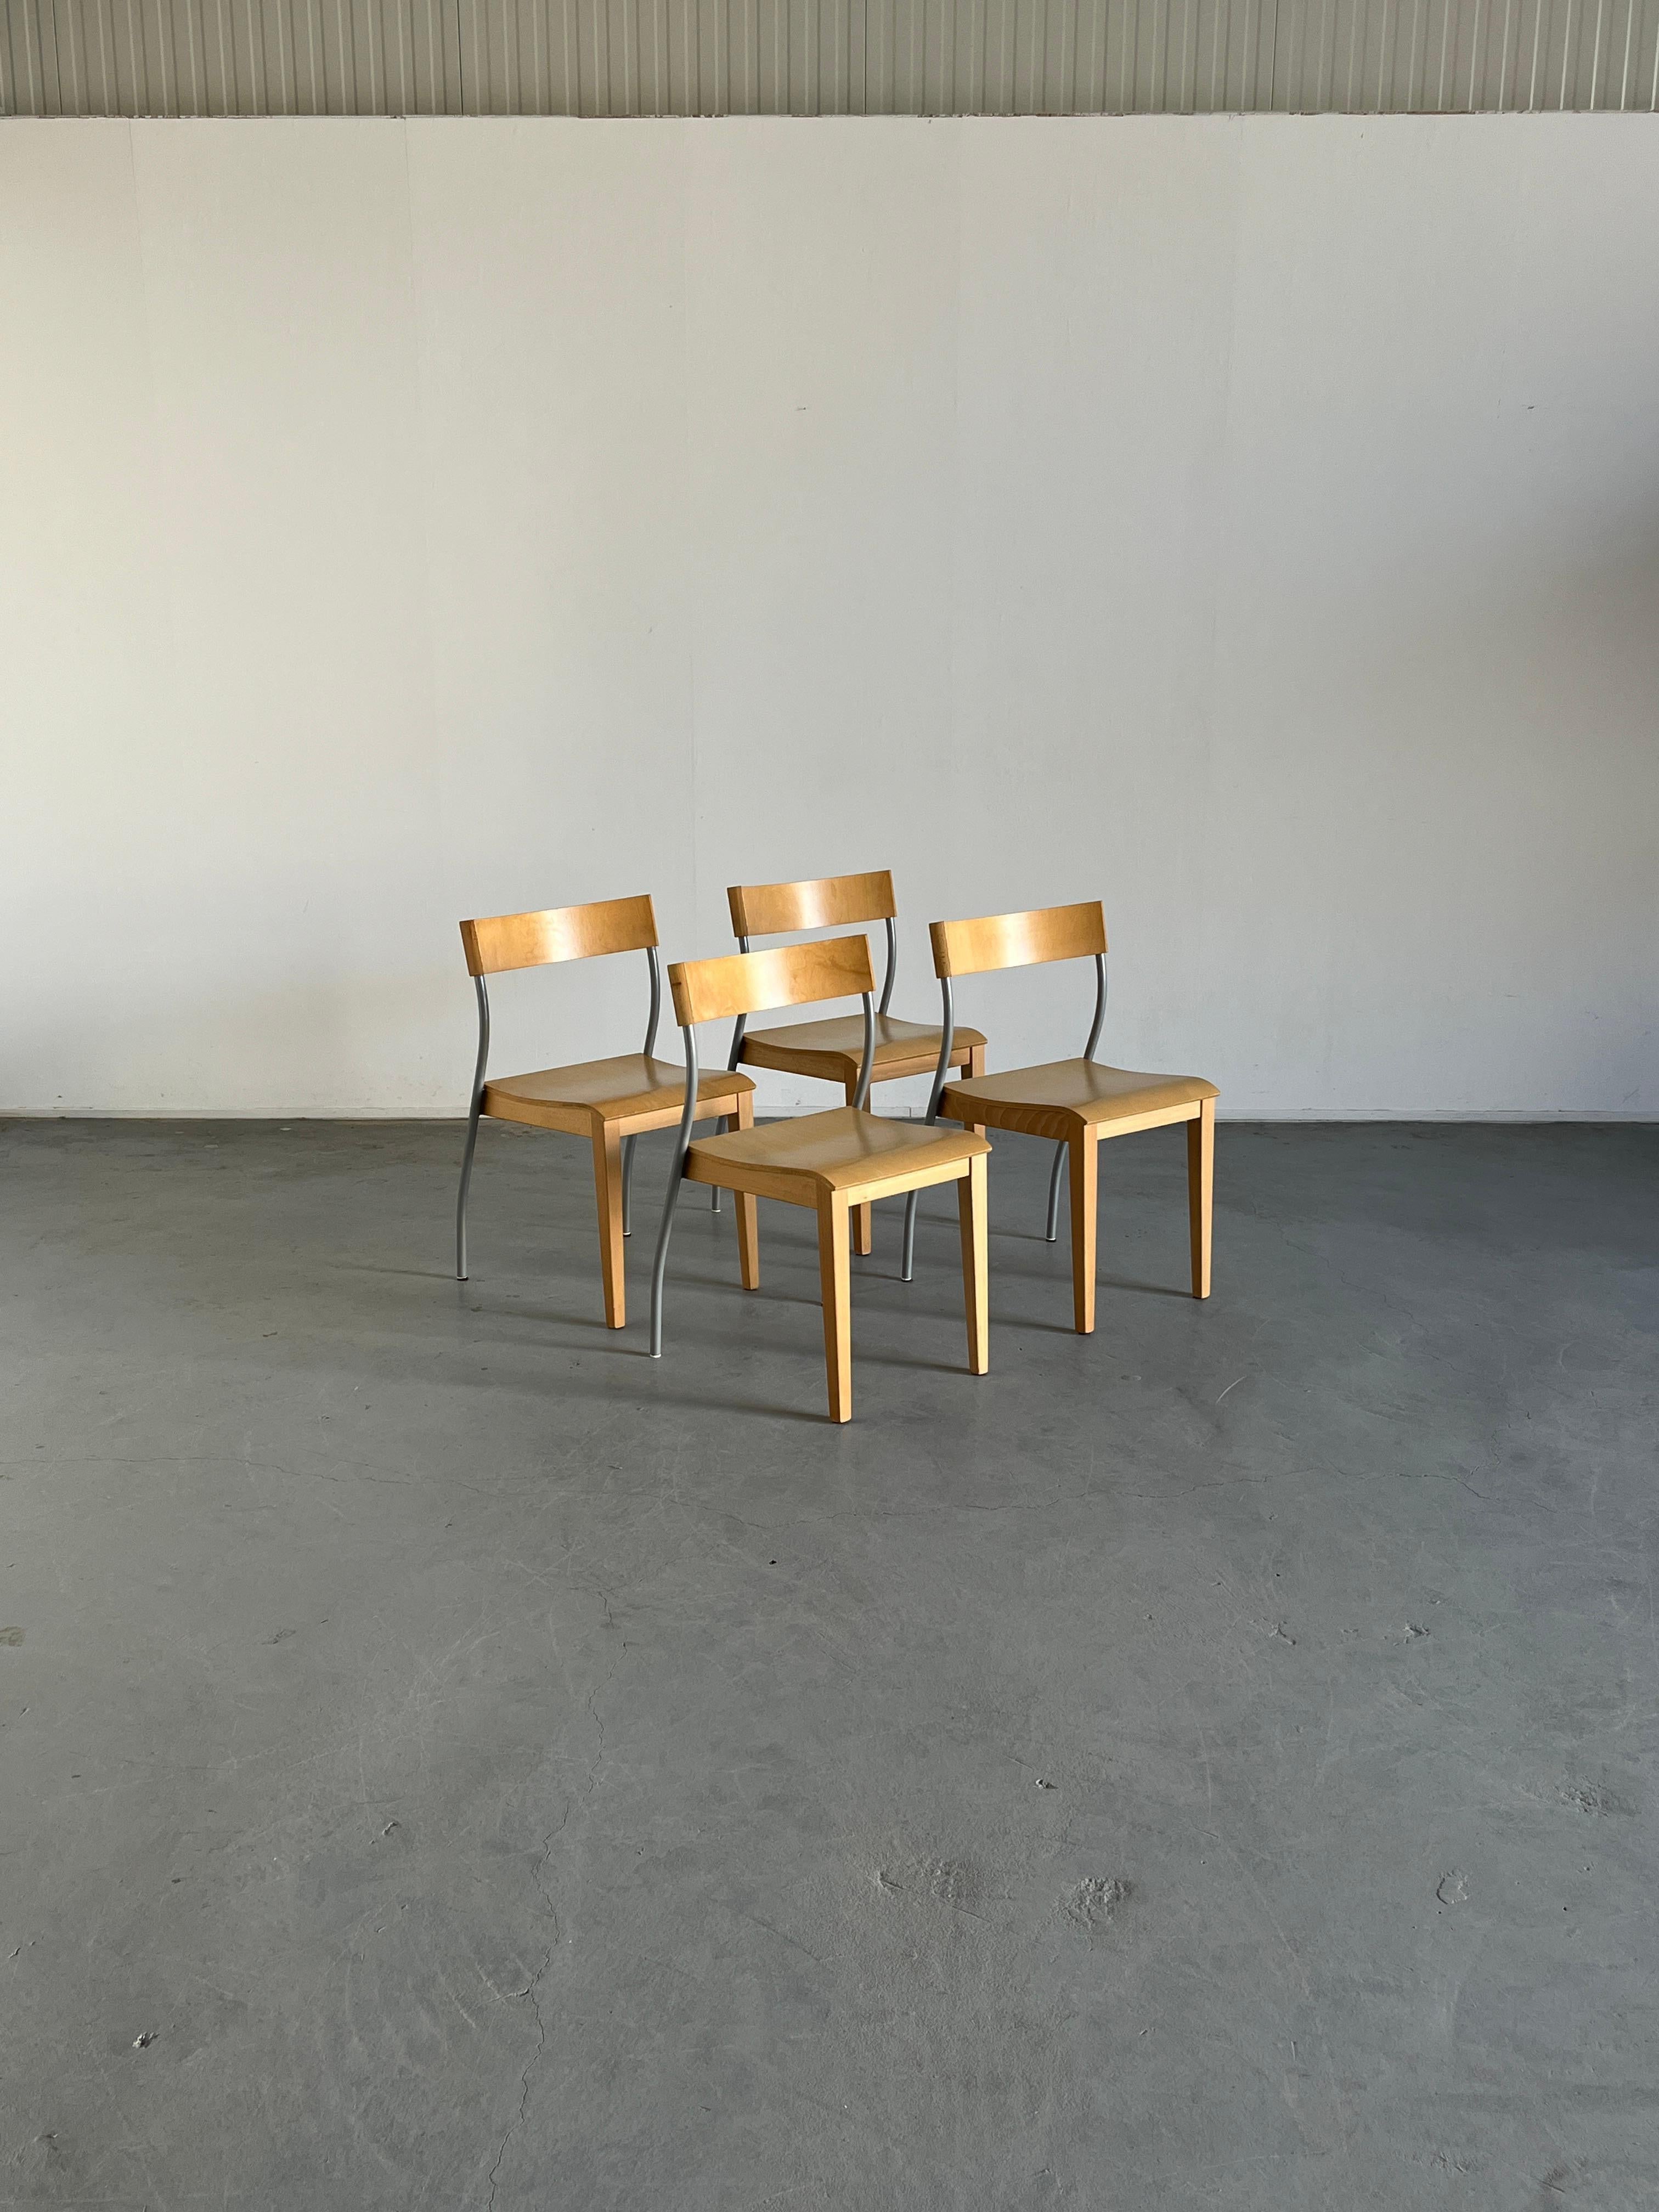 Satz von vier stapelbaren Ikea 'Nordisk' Esszimmerstühlen im Vintage-Stil.
Entworfen von Tina Christensen, 1992.
Ganz nach dem Vorbild von Philippe Starck.
Buche/Birkenfurnier, lackierter Stahl.

Gut erhalten und in gutem Zustand mit kleineren